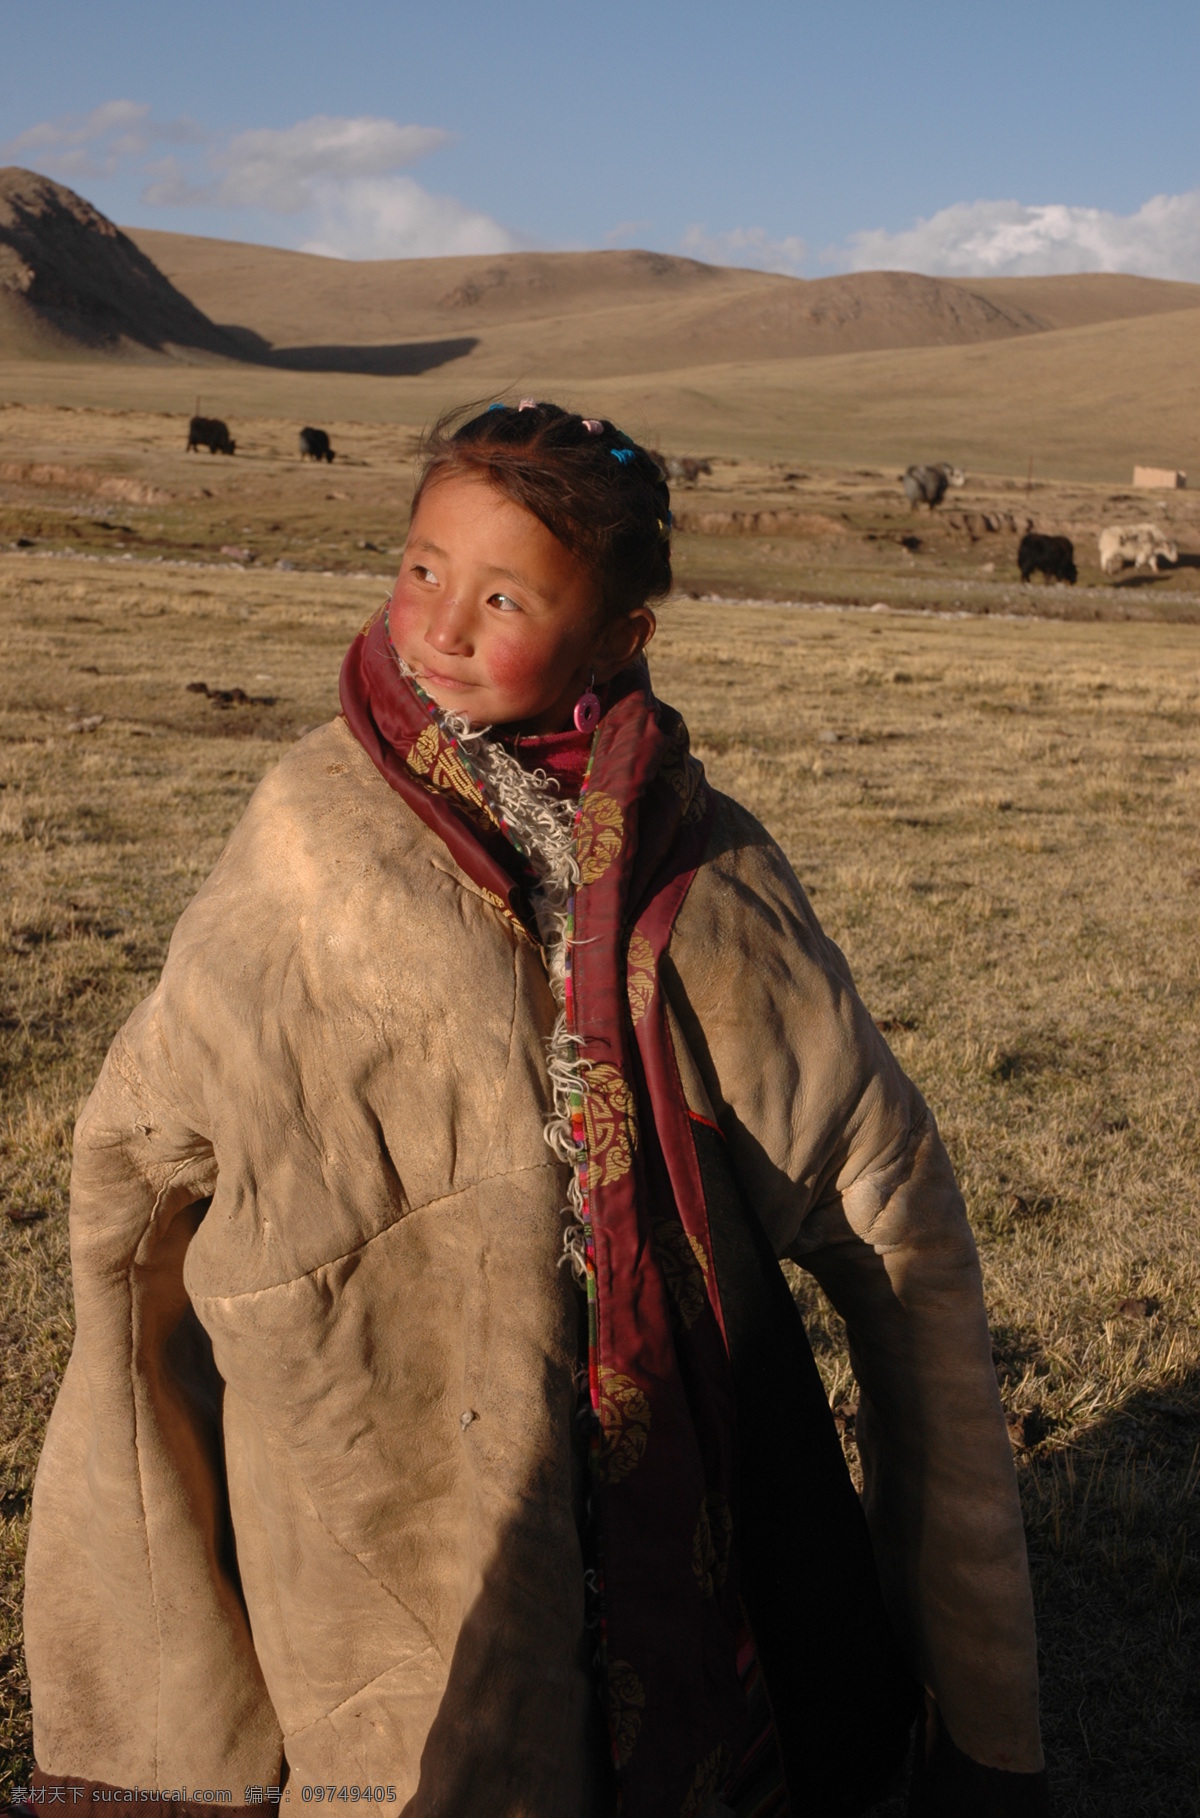 藏族少女 藏族 少女 少数民族 草原 藏族风情 日常生活 人物图库